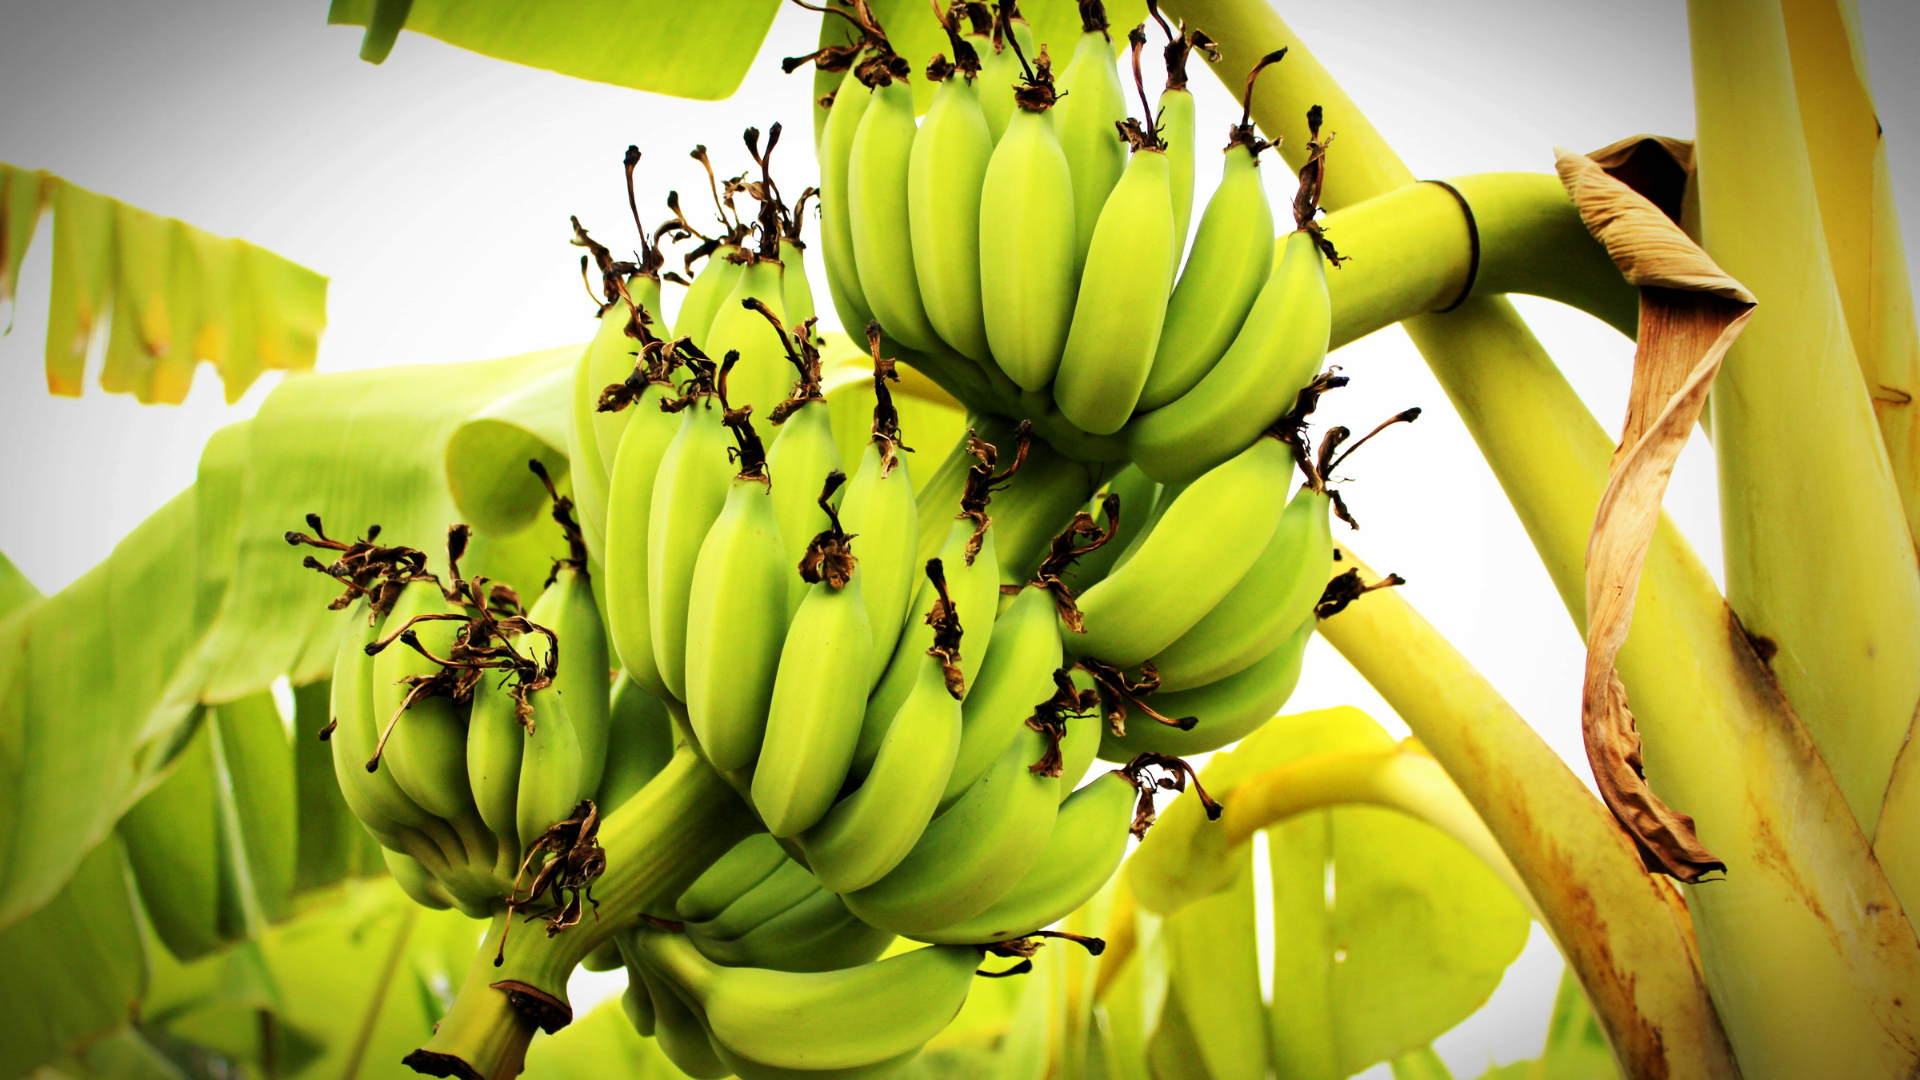 Banana verde ajuda a prevenir o câncer